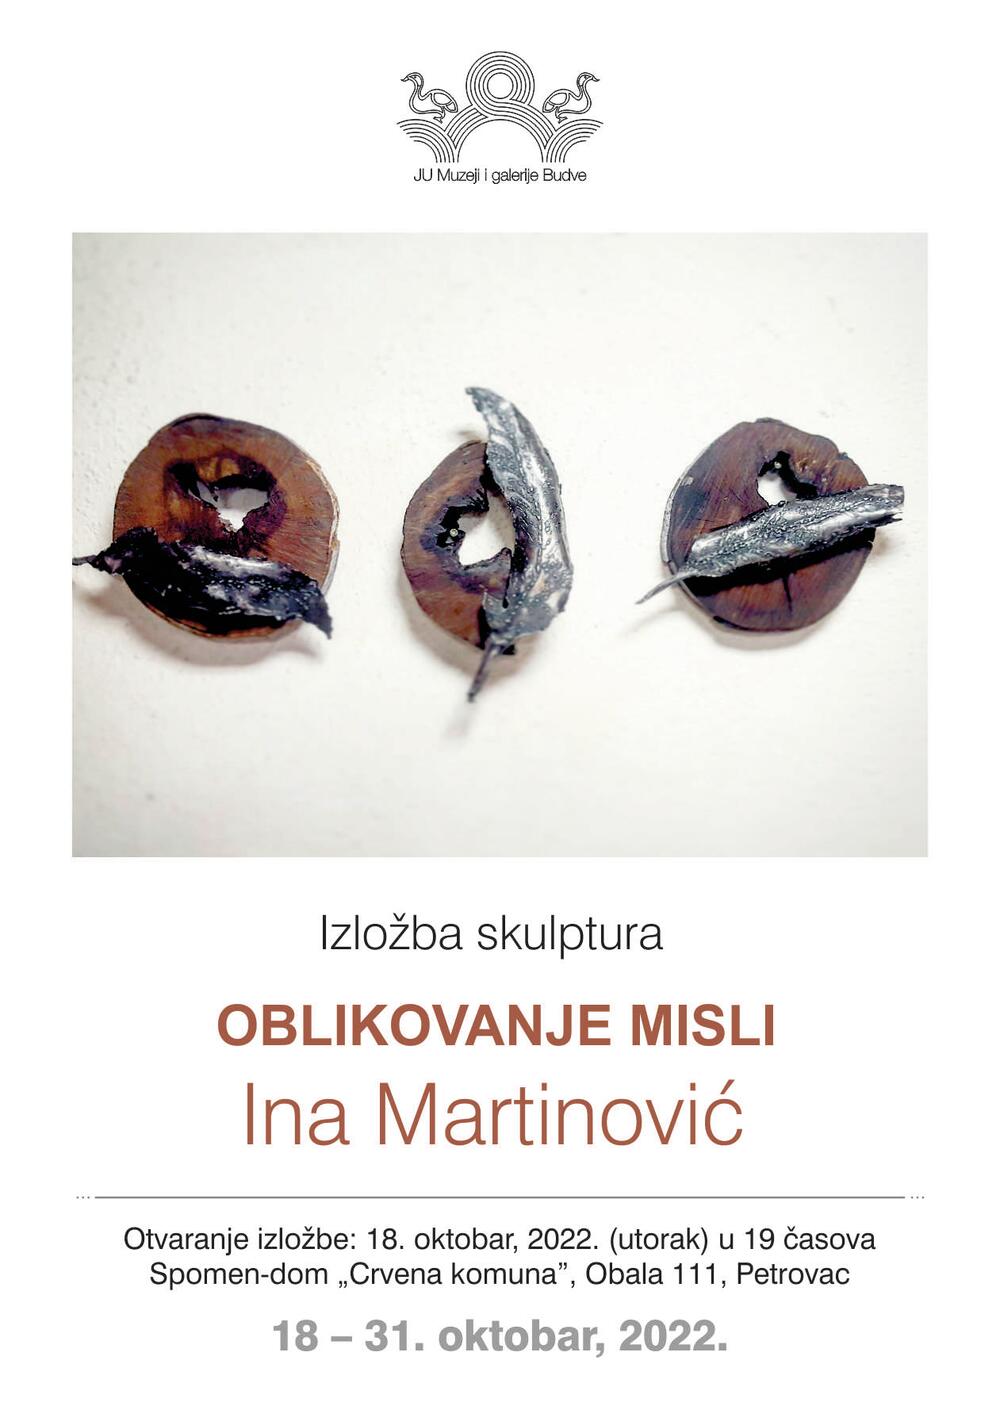 Ina Martinović